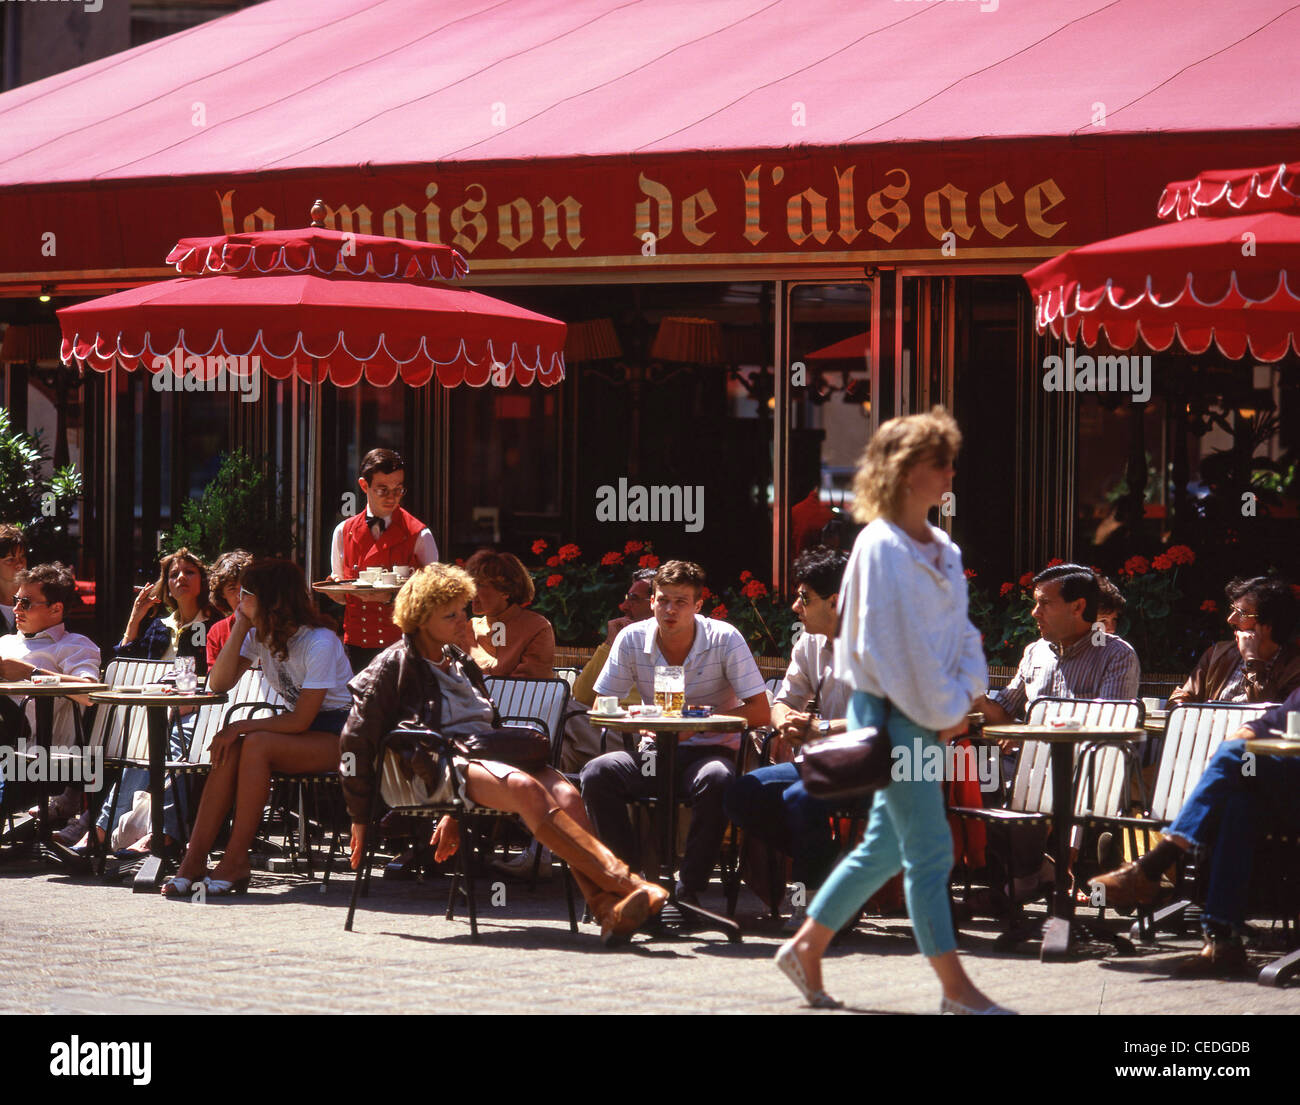 La Maison de L'Alsace restaurant, Avenue des Champs-Élysées, Paris, Île-de-France, France Stock Photo